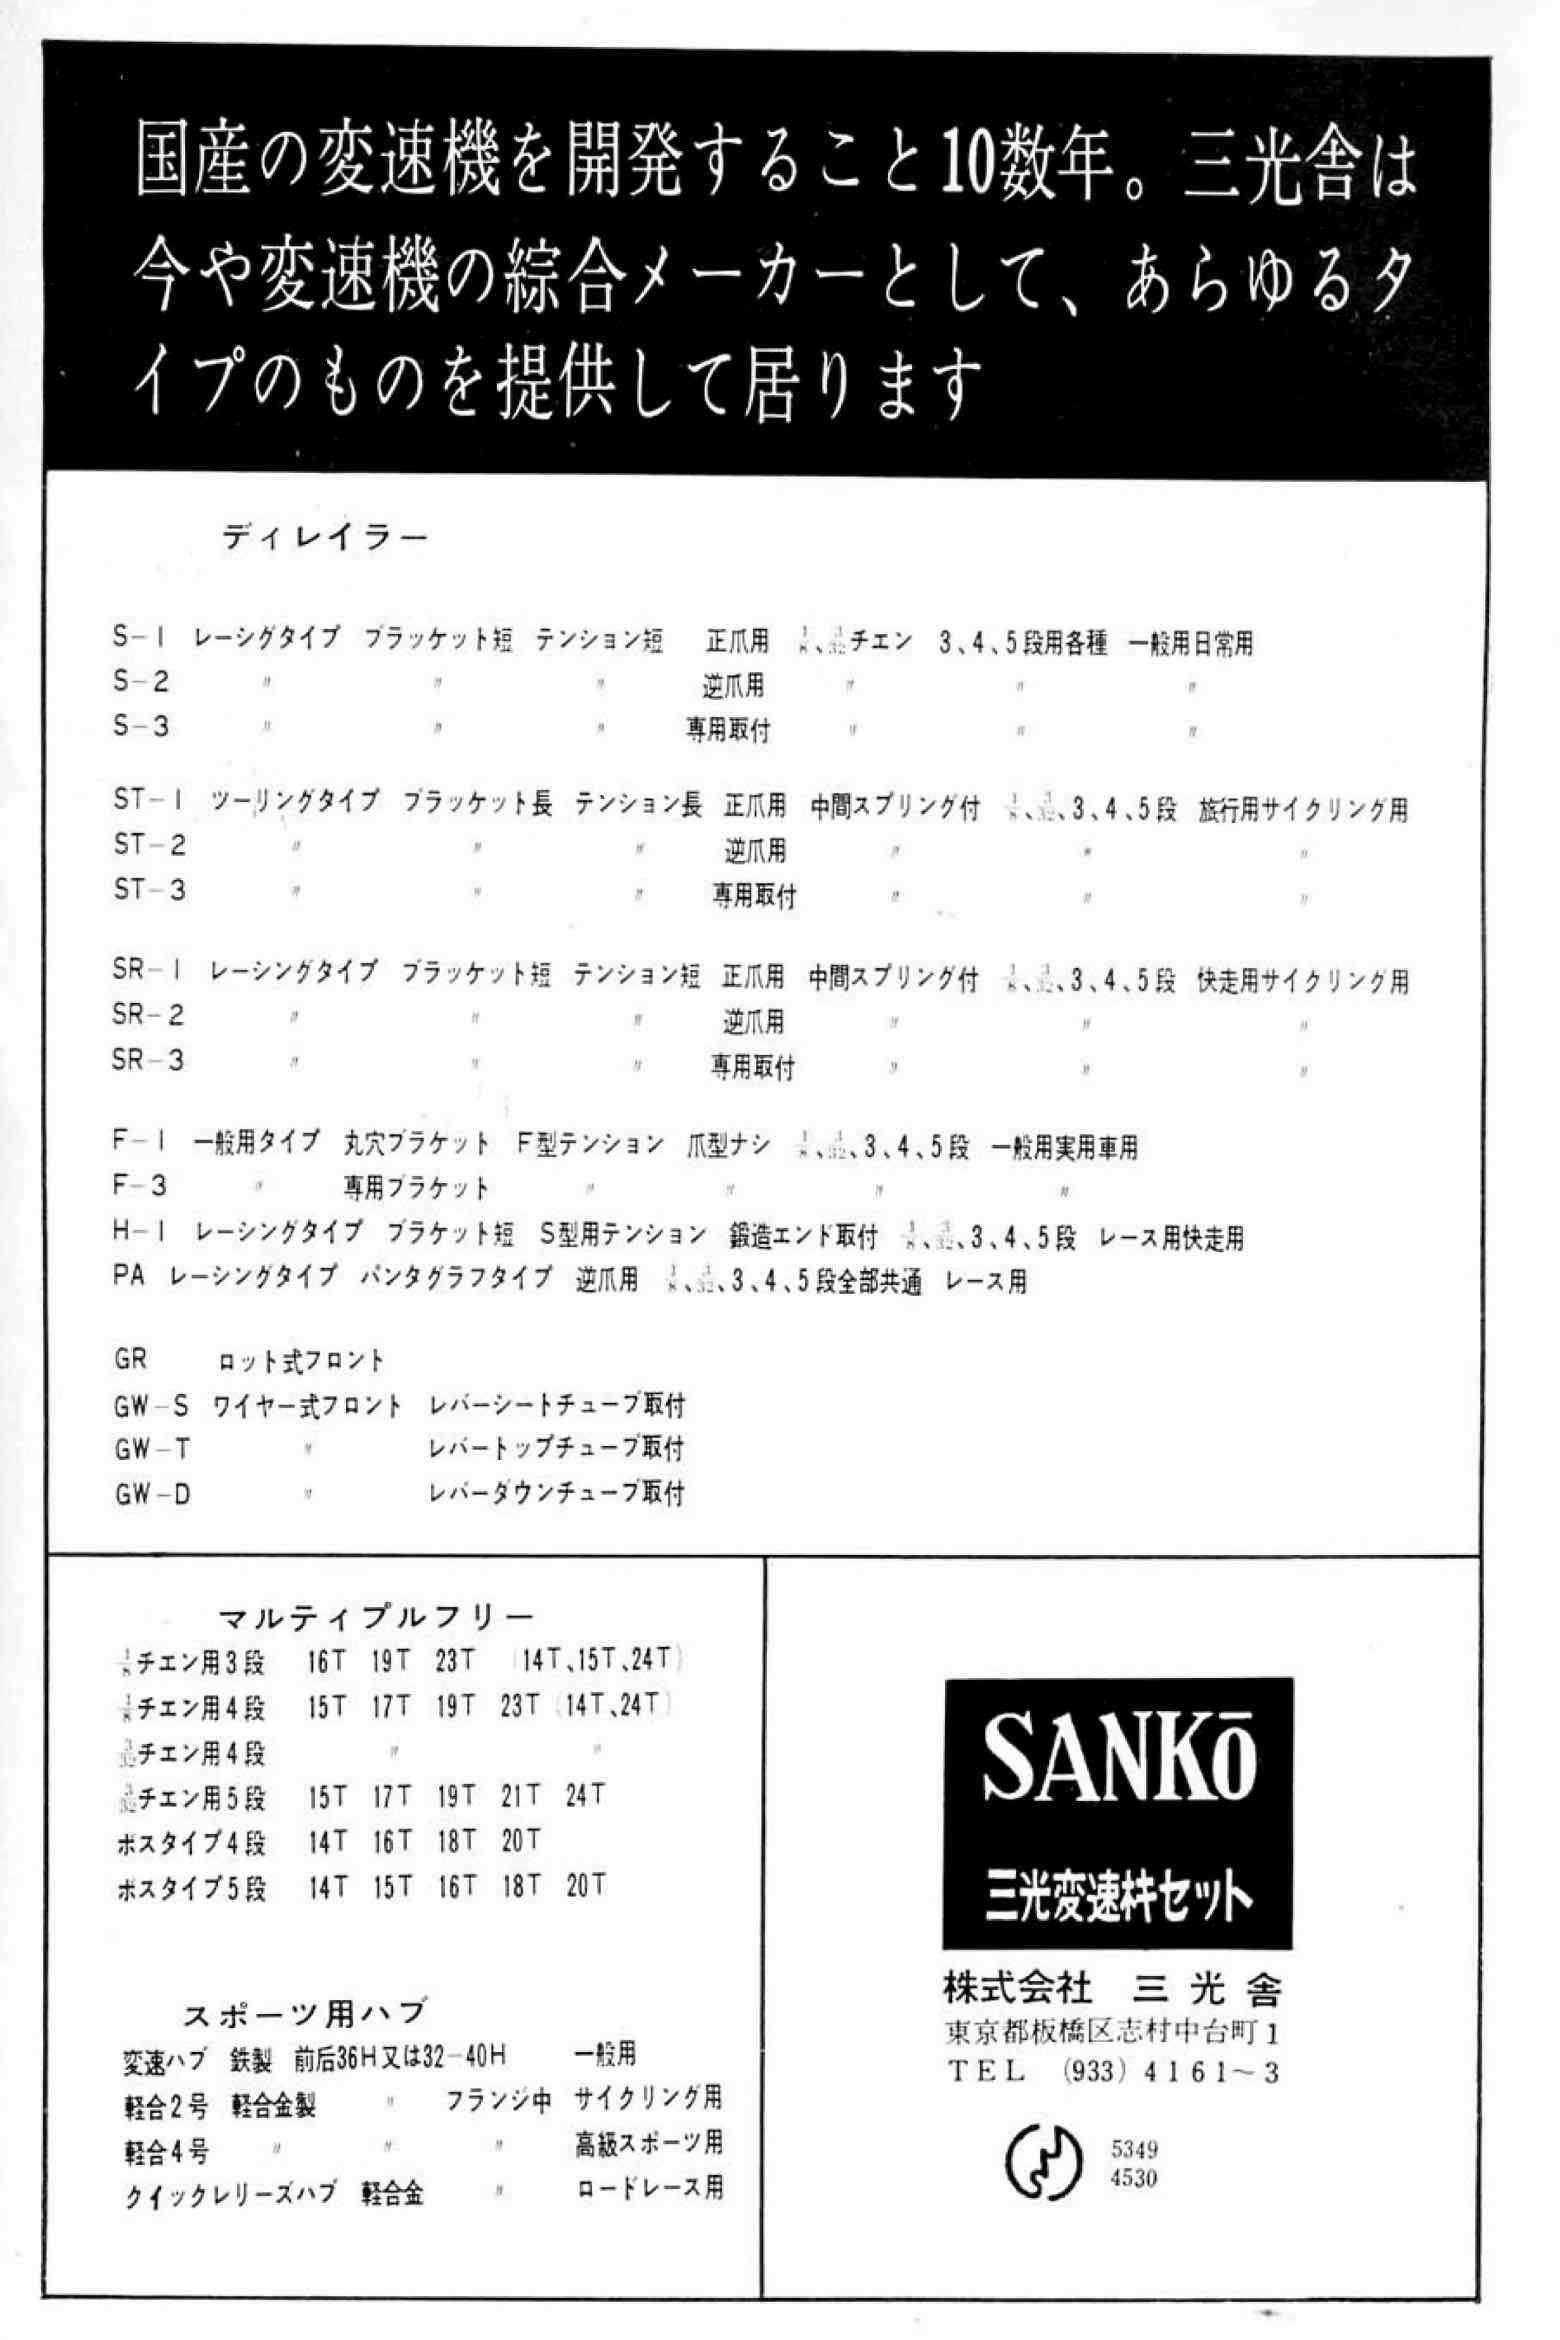 New Cycling April 1964 - Sanko advert main image